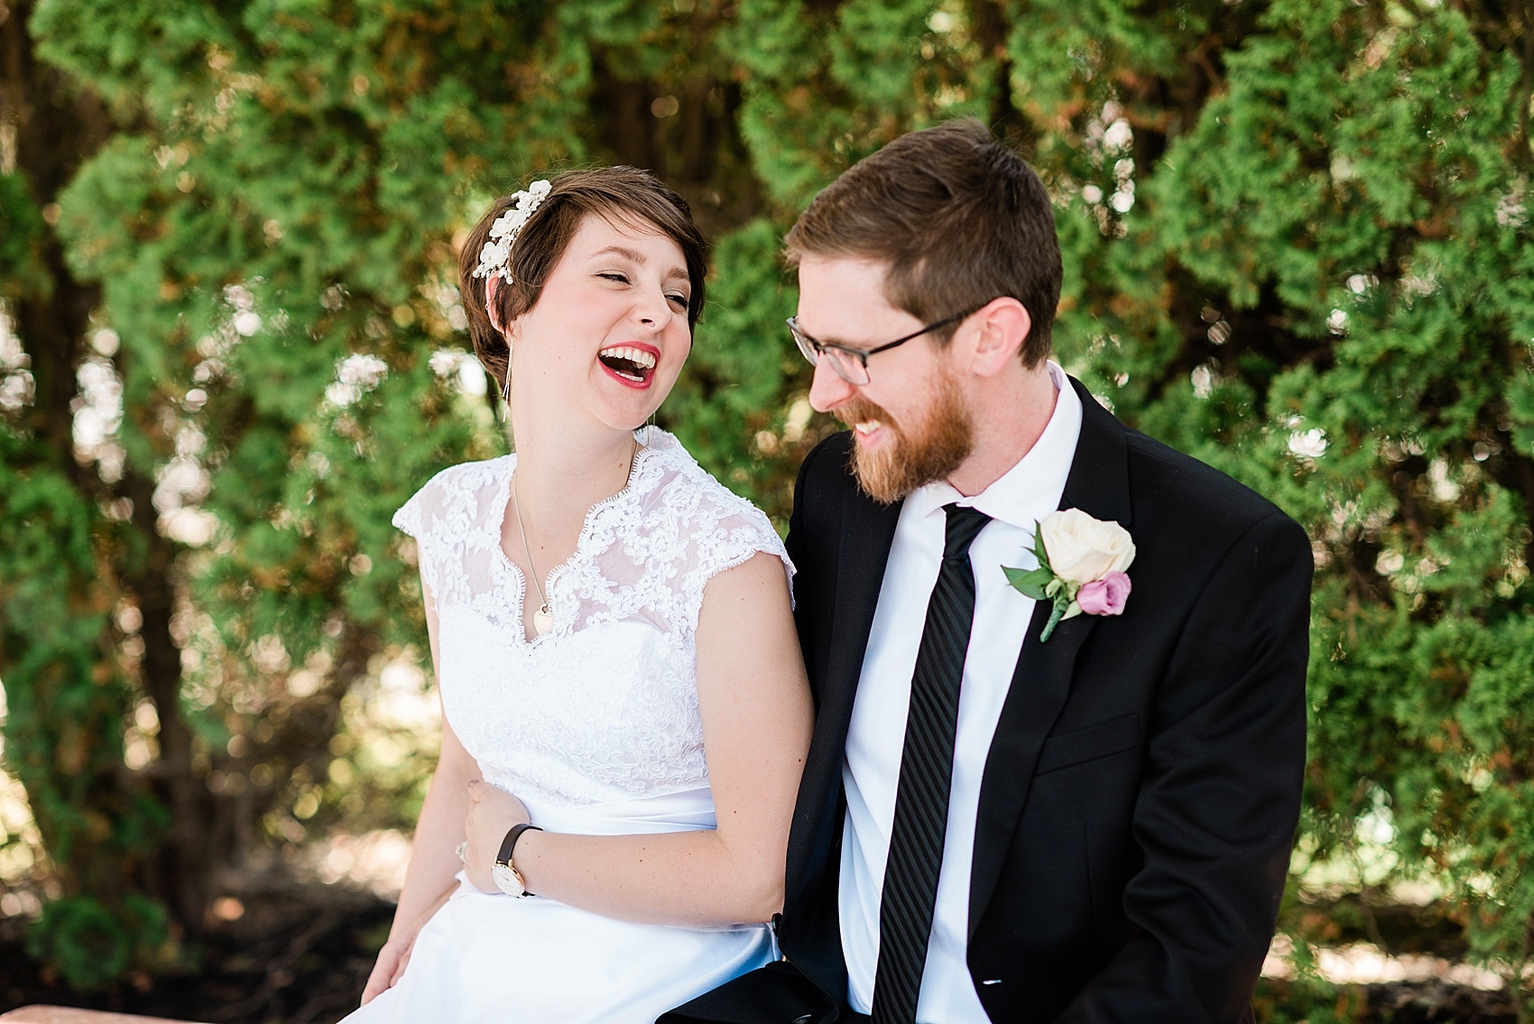 East Lansing wedding photographers - natural laughing wedding photos